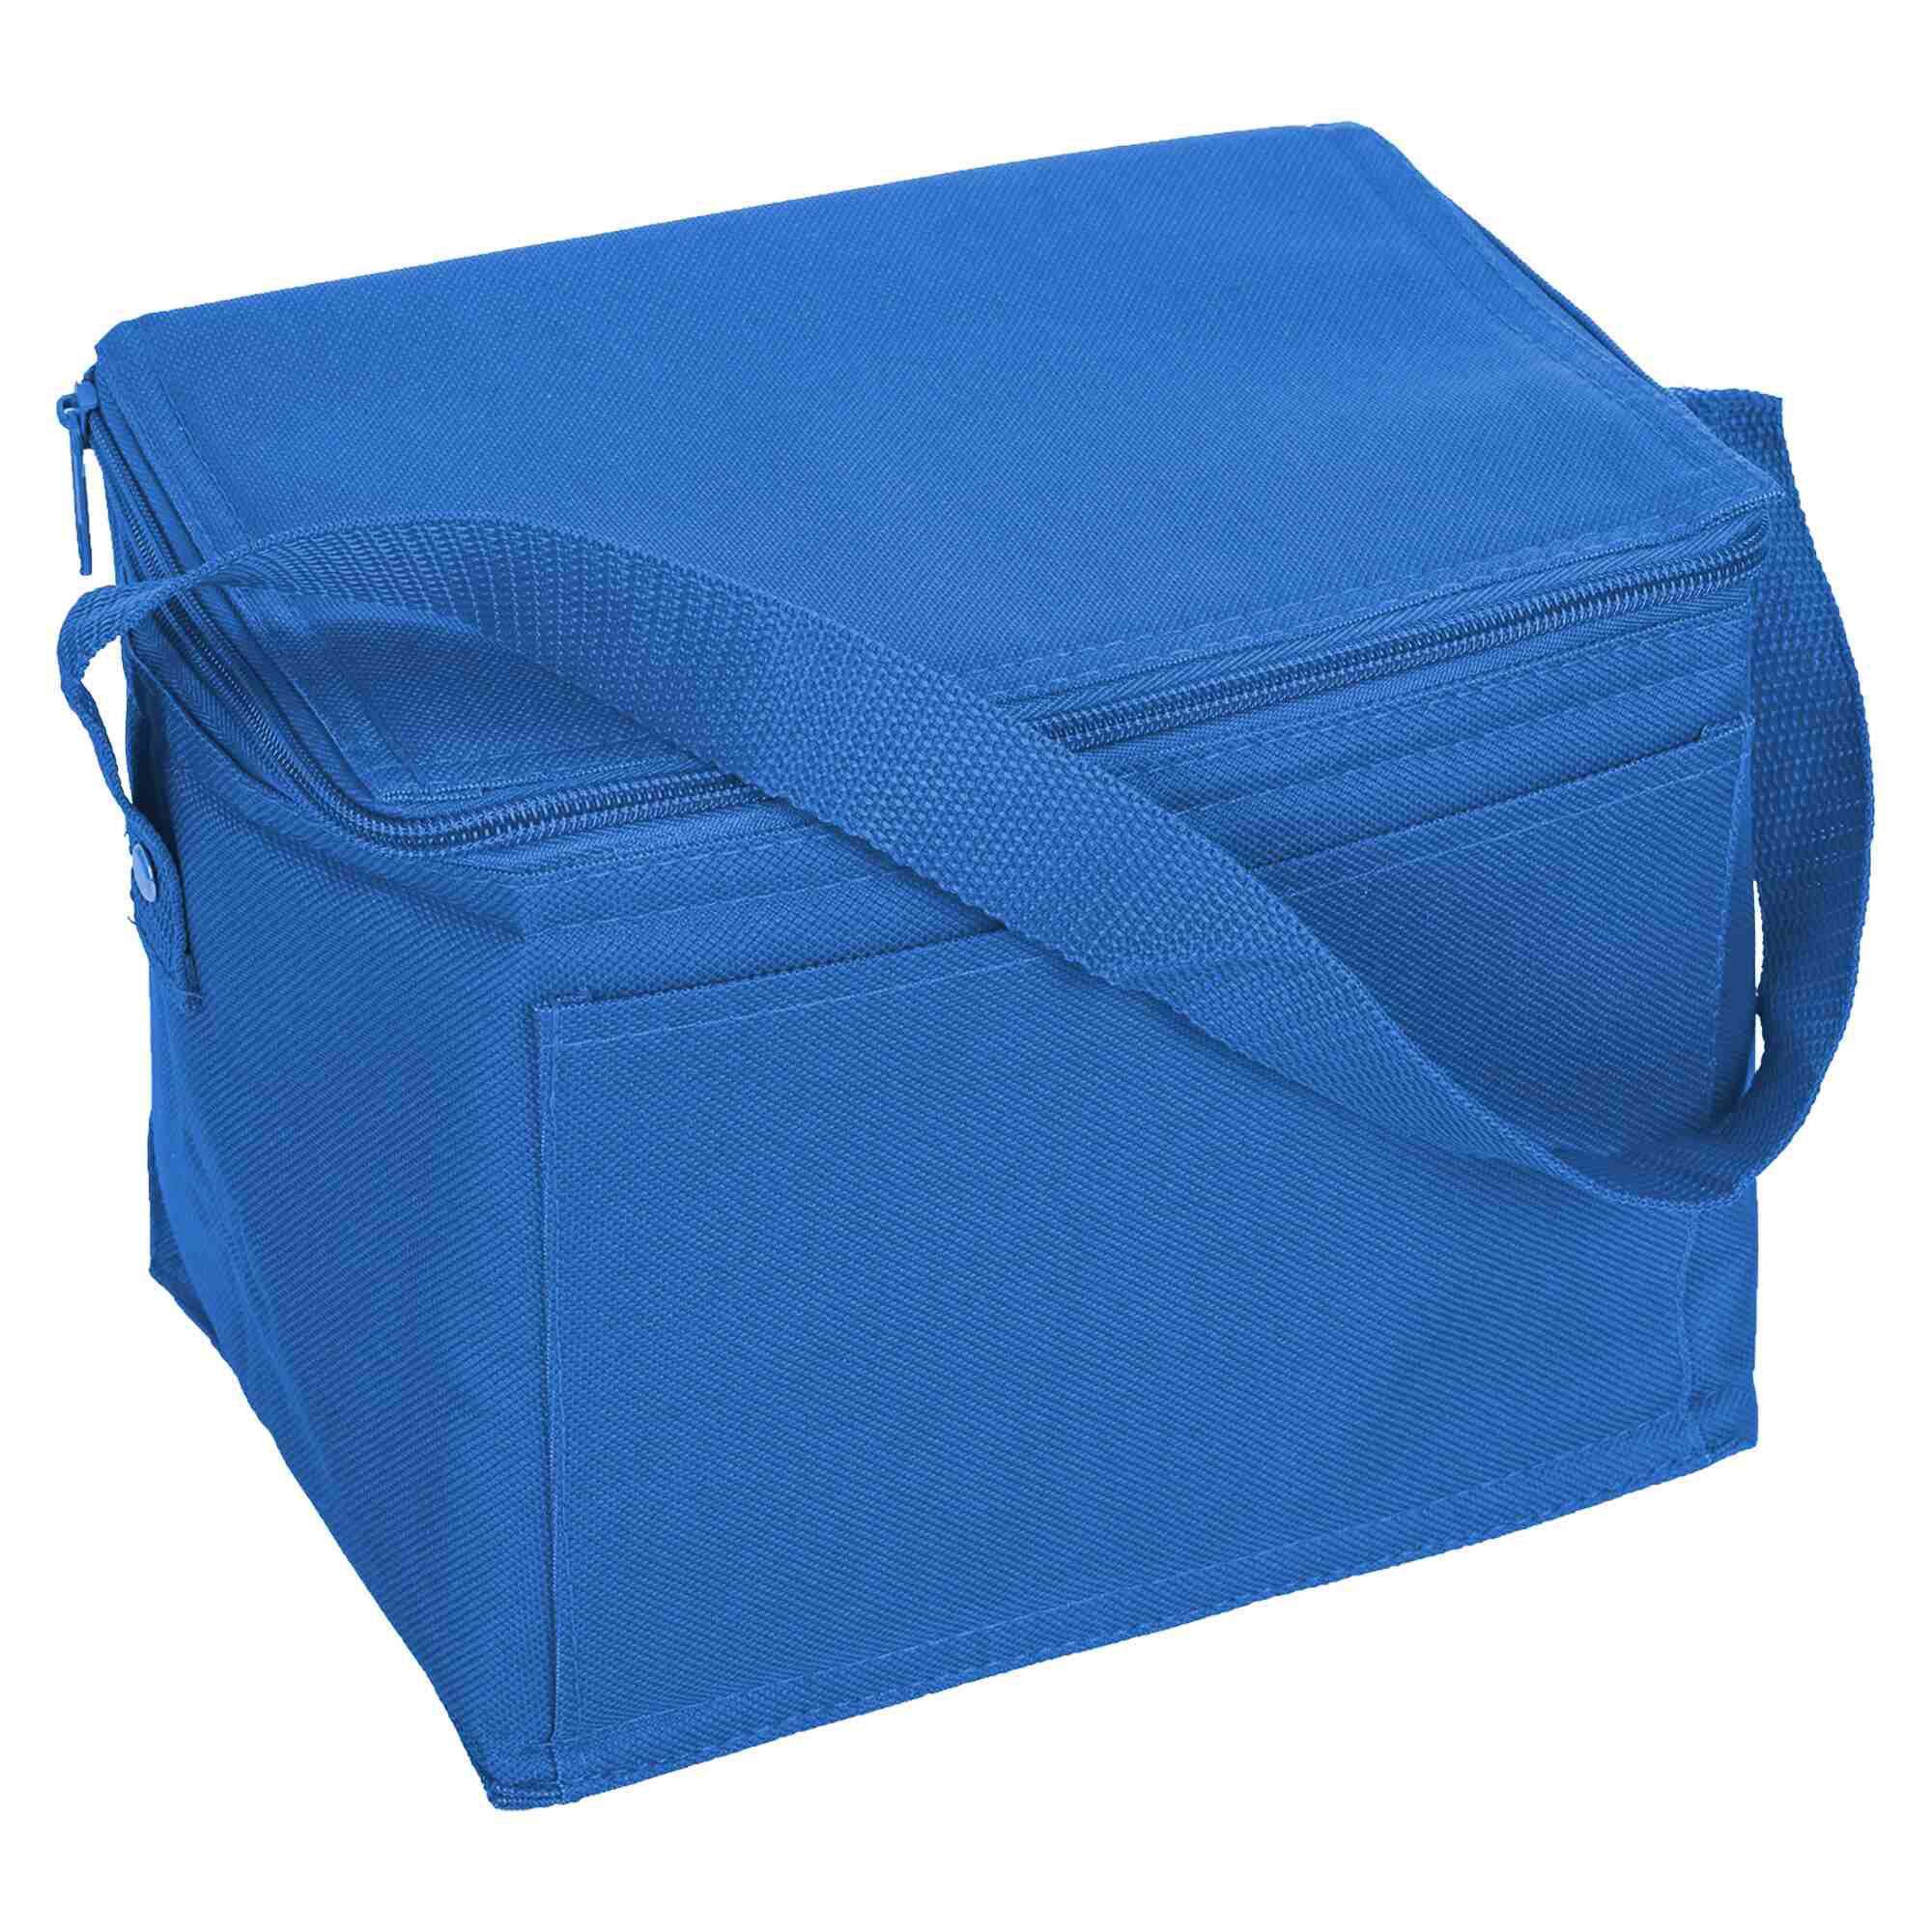 Custom Made Nylon Cooler Bag Online in Perth Australia